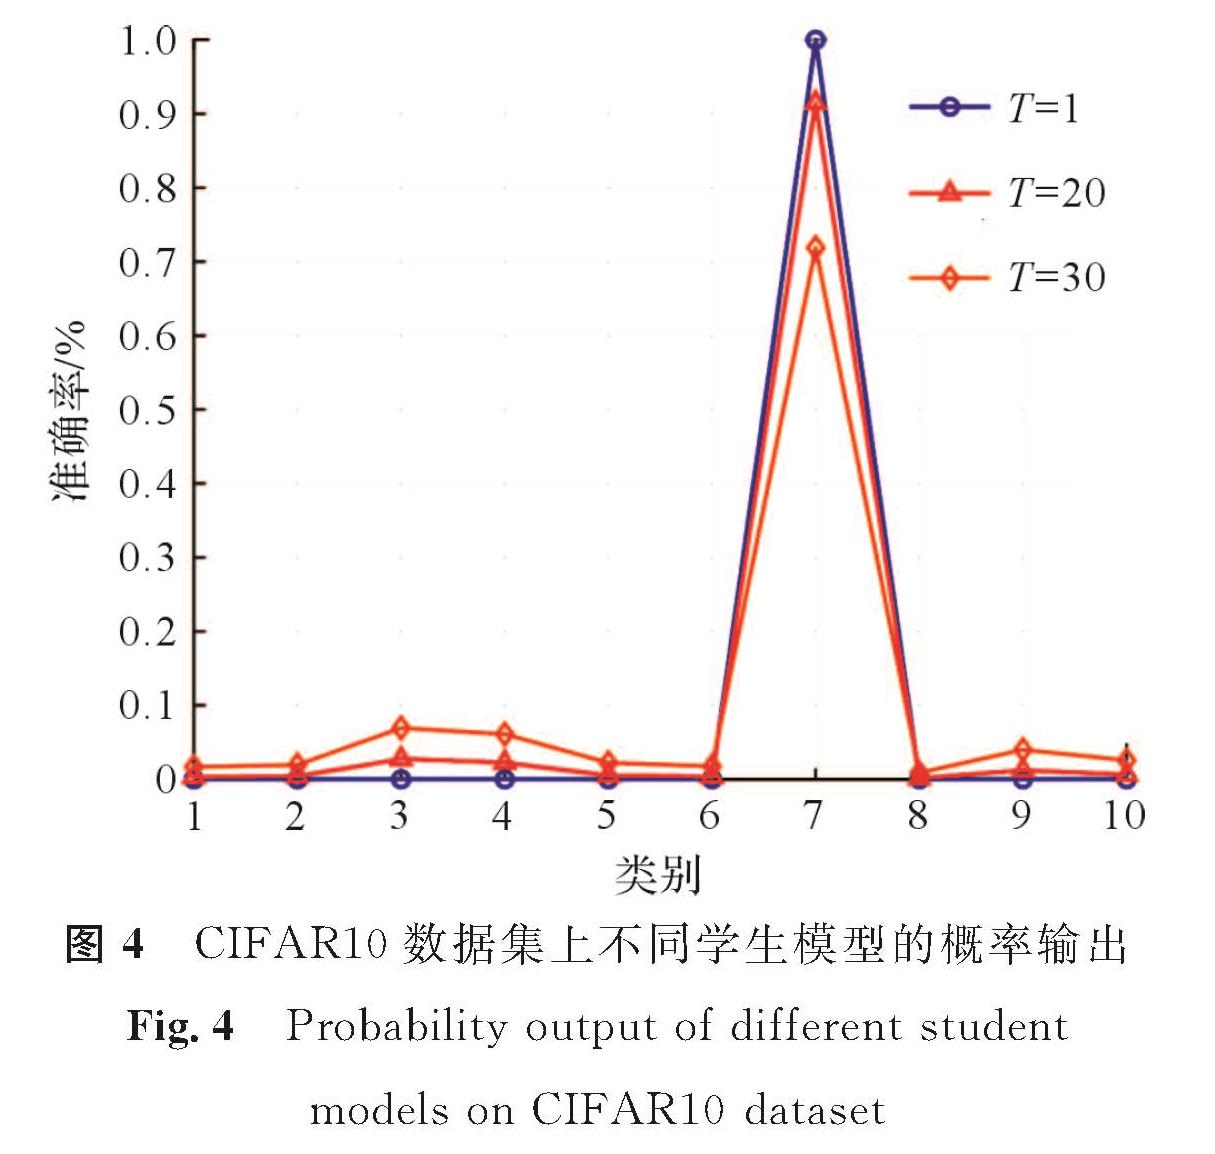 图4 CIFAR10数据集上不同学生模型的概率输出<br/>Fig.4 Probability output of different student models on CIFAR10 dataset